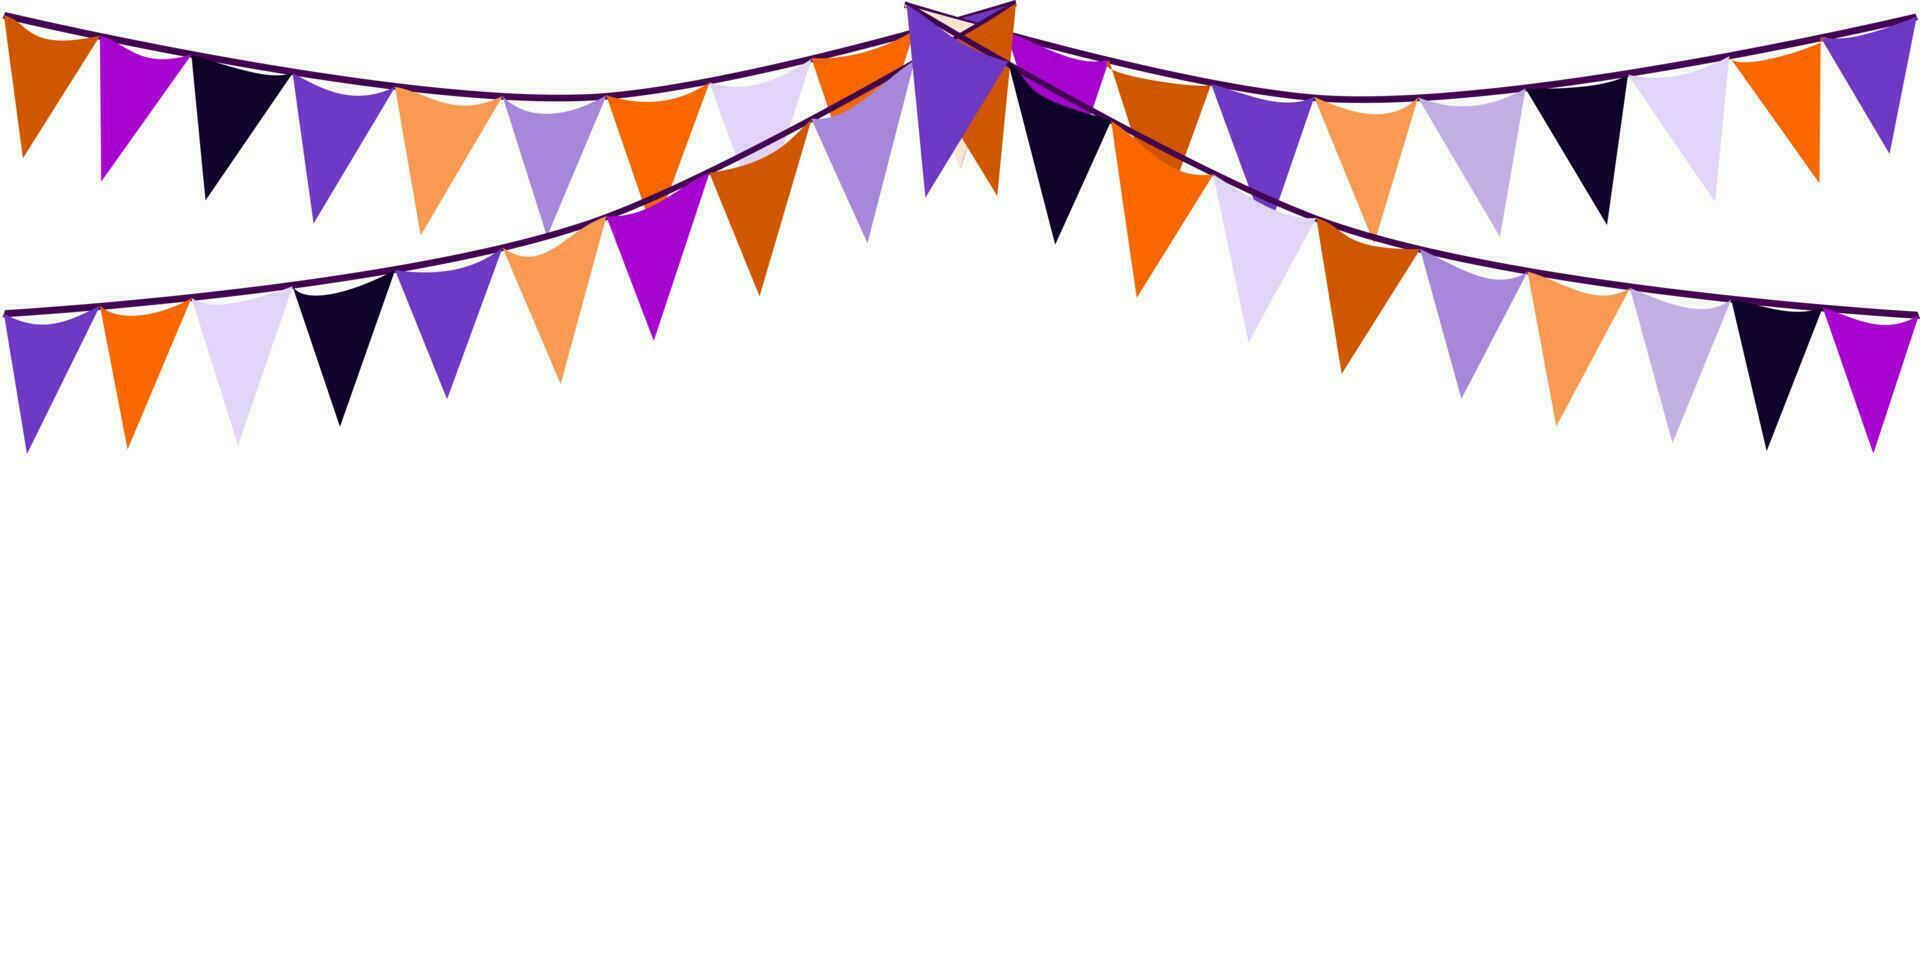 pavese triangoli bandiere Halloween tema bandiera sfondo. viola, arancia, e nero colore tema. per il festa, Halloween notte, trucco o trattare concetti. vettore